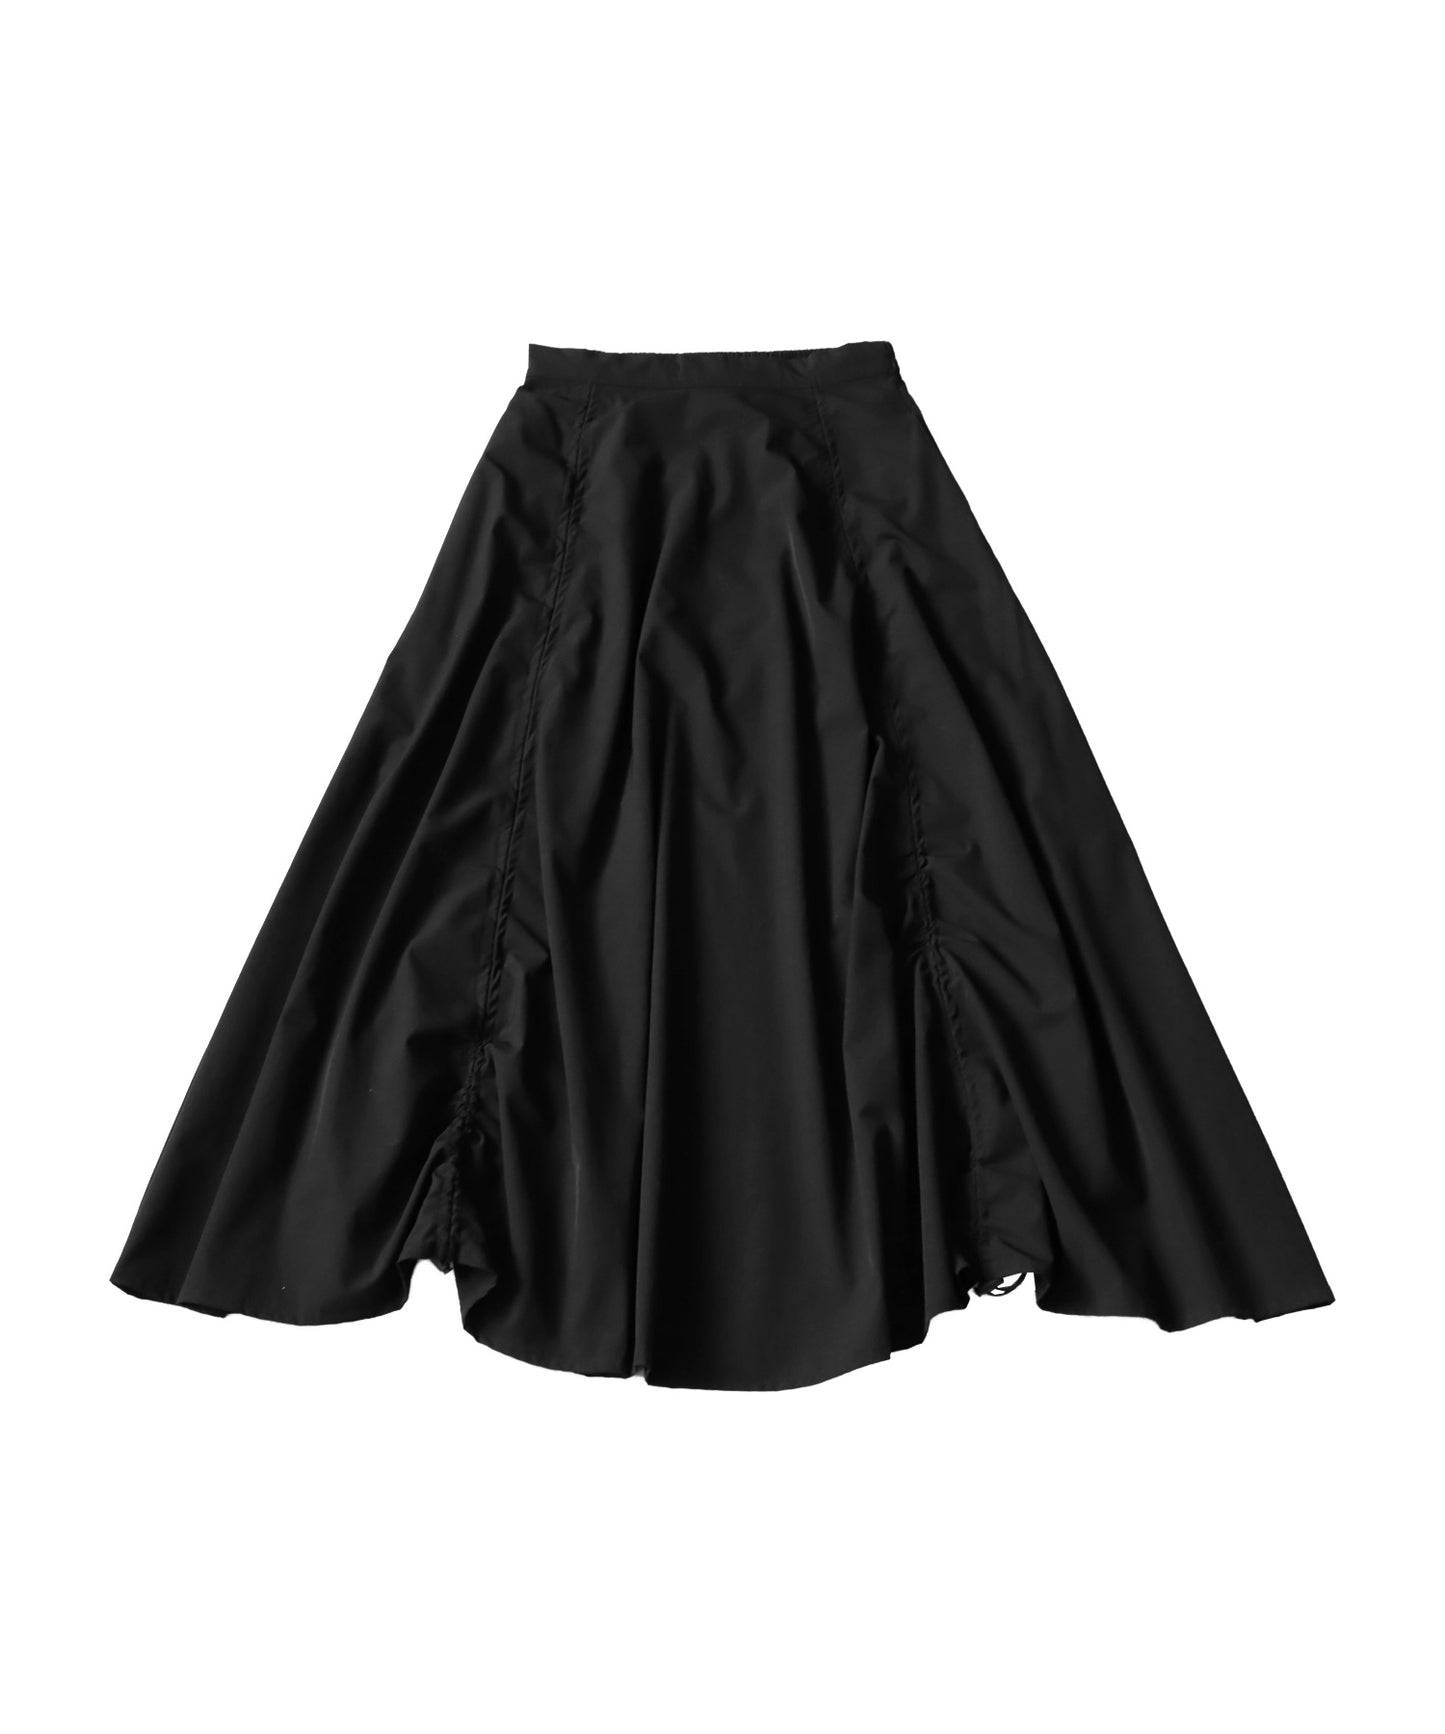 Ladies long drawstring skirt